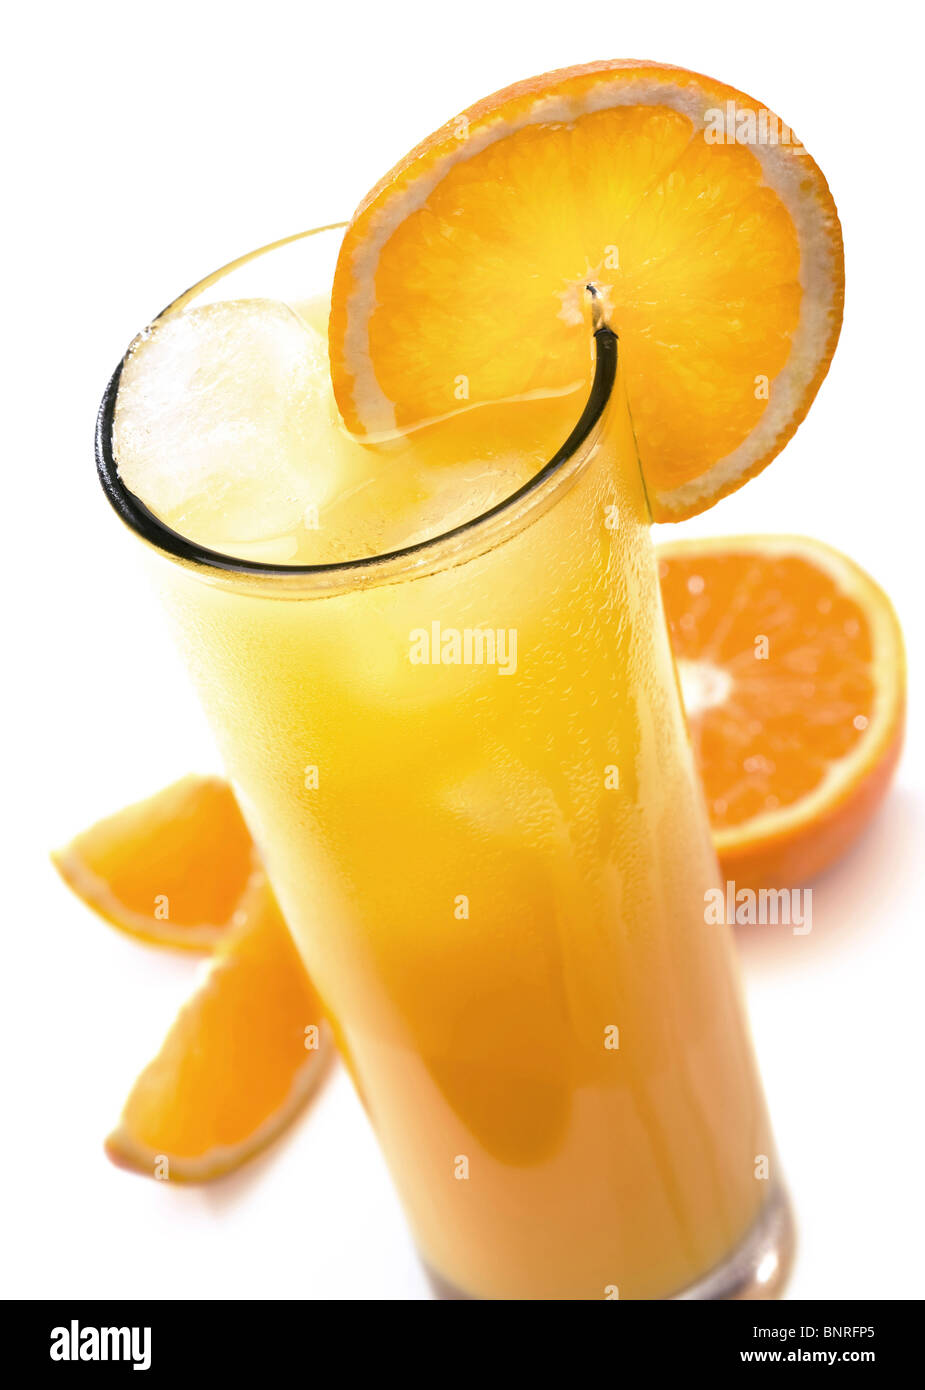 Vaso de jugo de naranja helado con rodajas de naranja (aislado contra blanco) Foto de stock